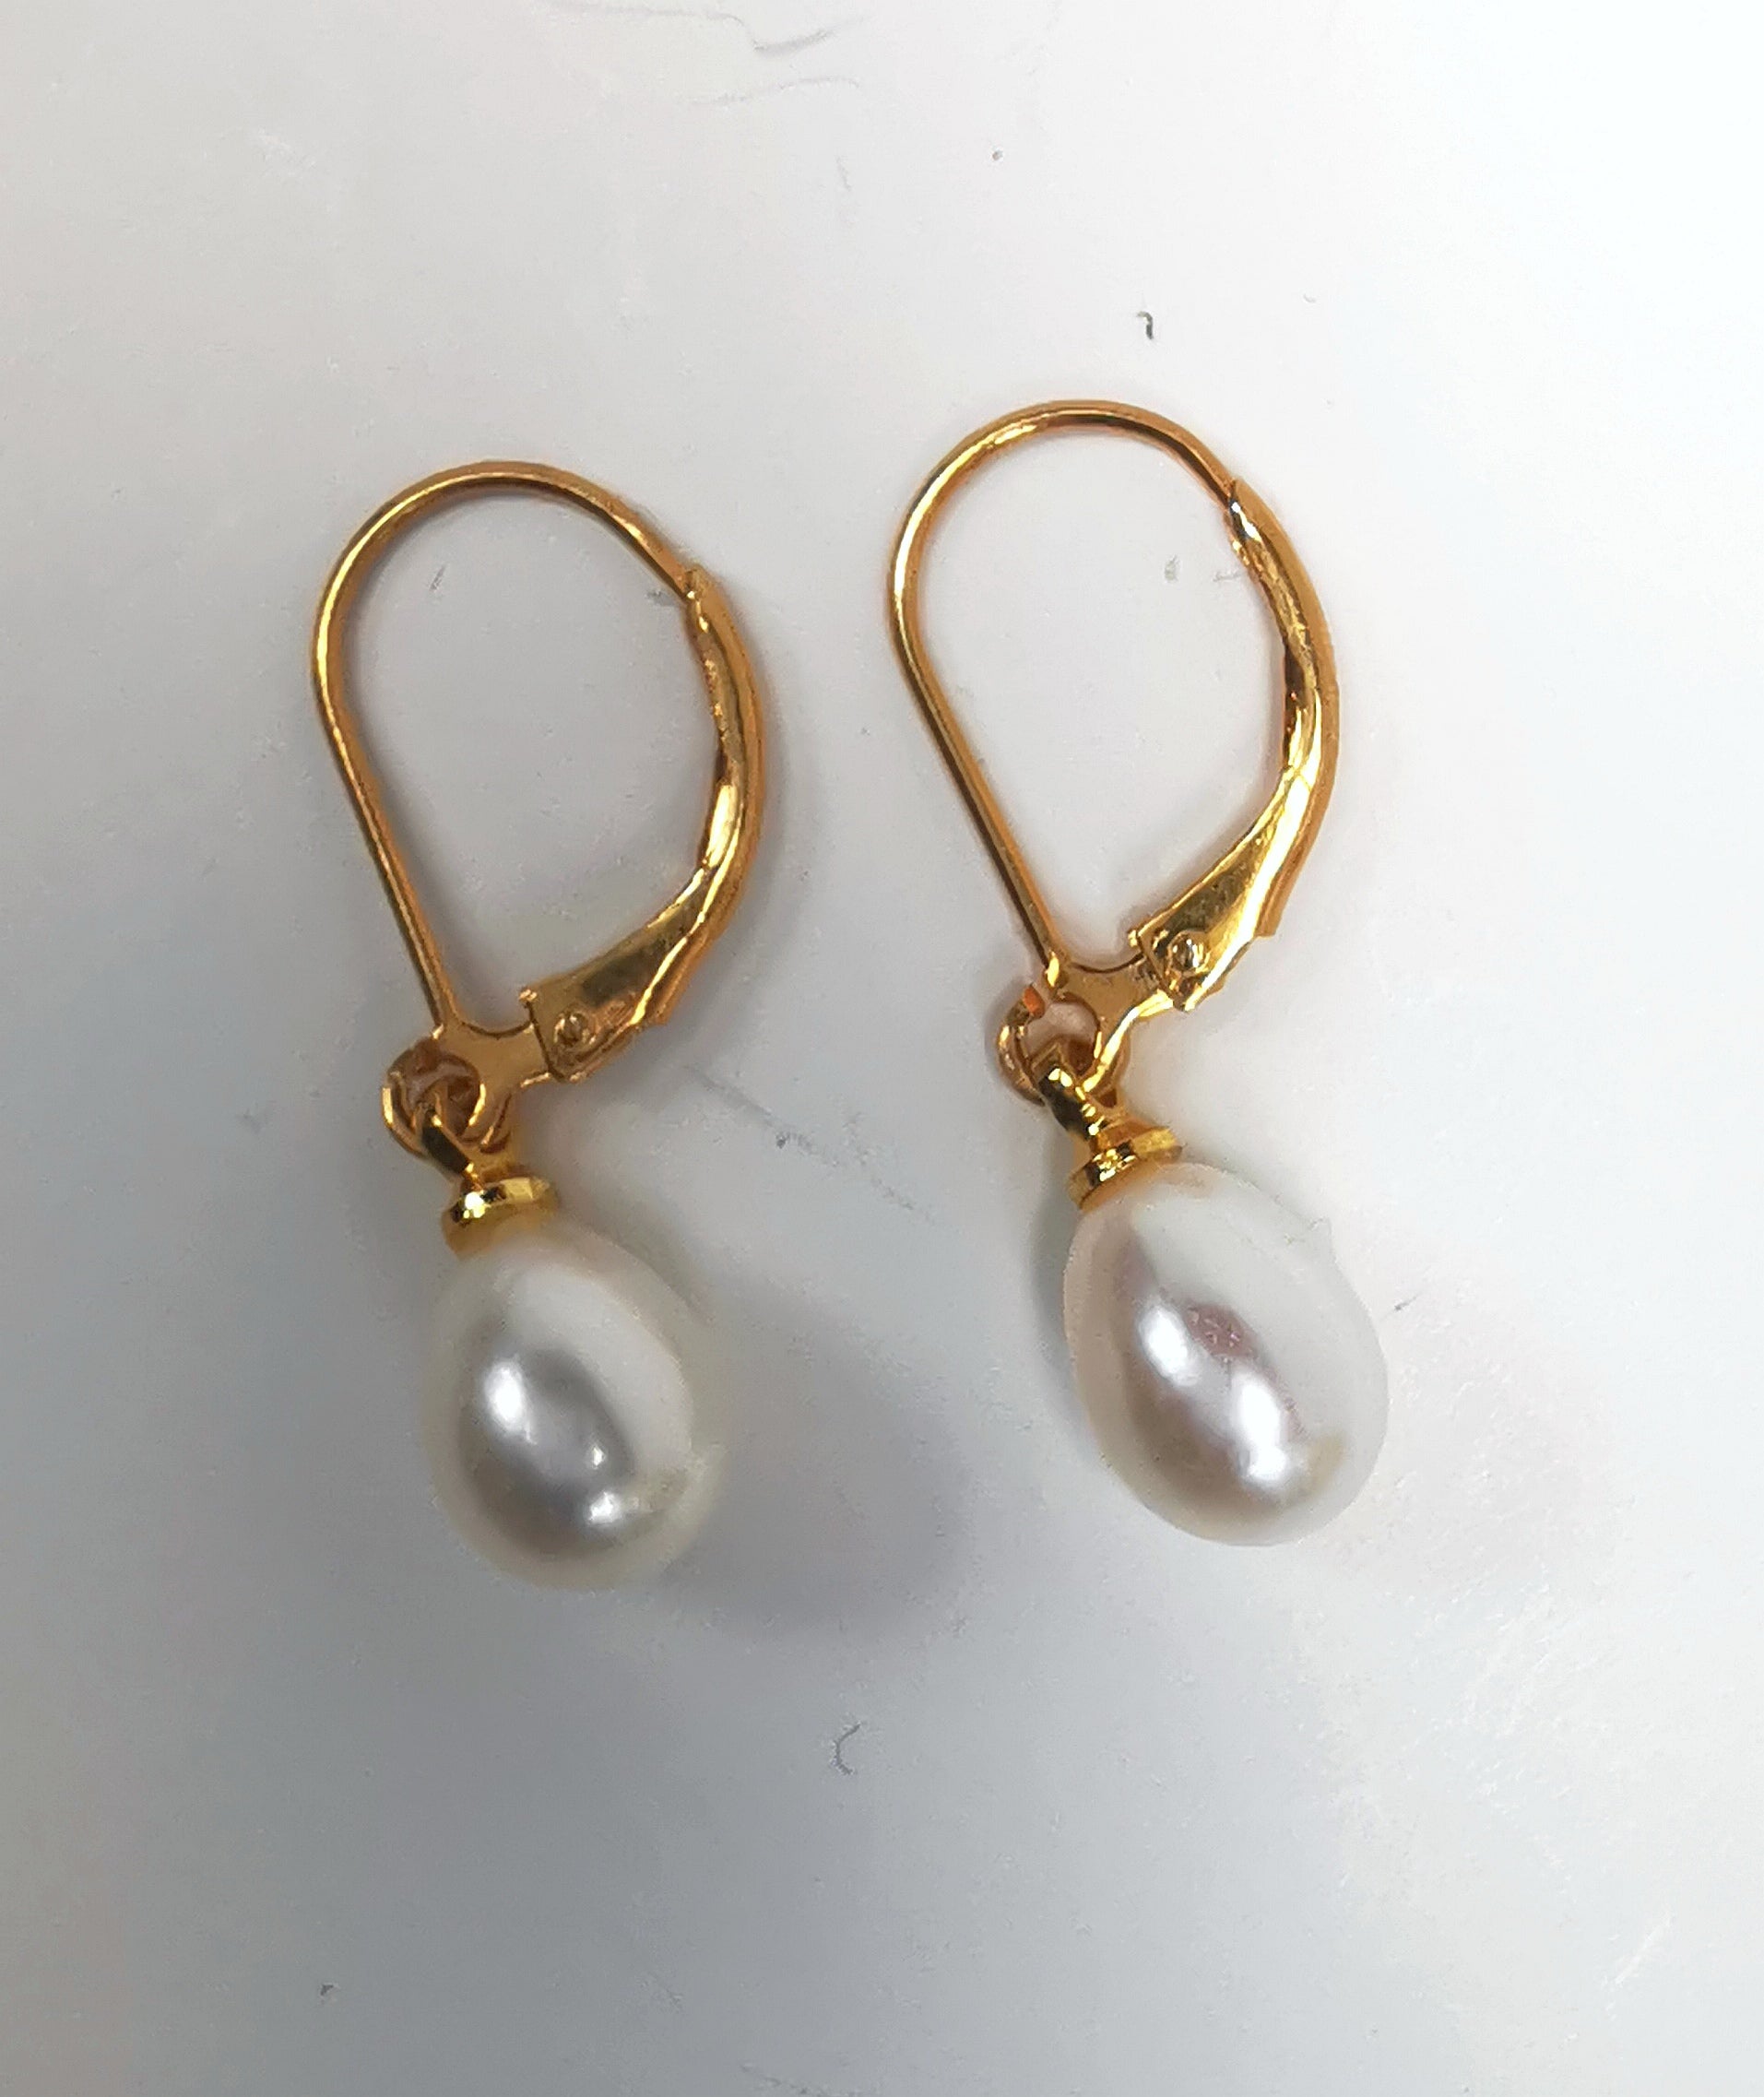 Boucles d'oreilles perles de culture blanches 7-9mm sur dormeuses plaquées or. Présentées posées sur un fond blanc, cote à cote, perles en bas. Vue de dessus.